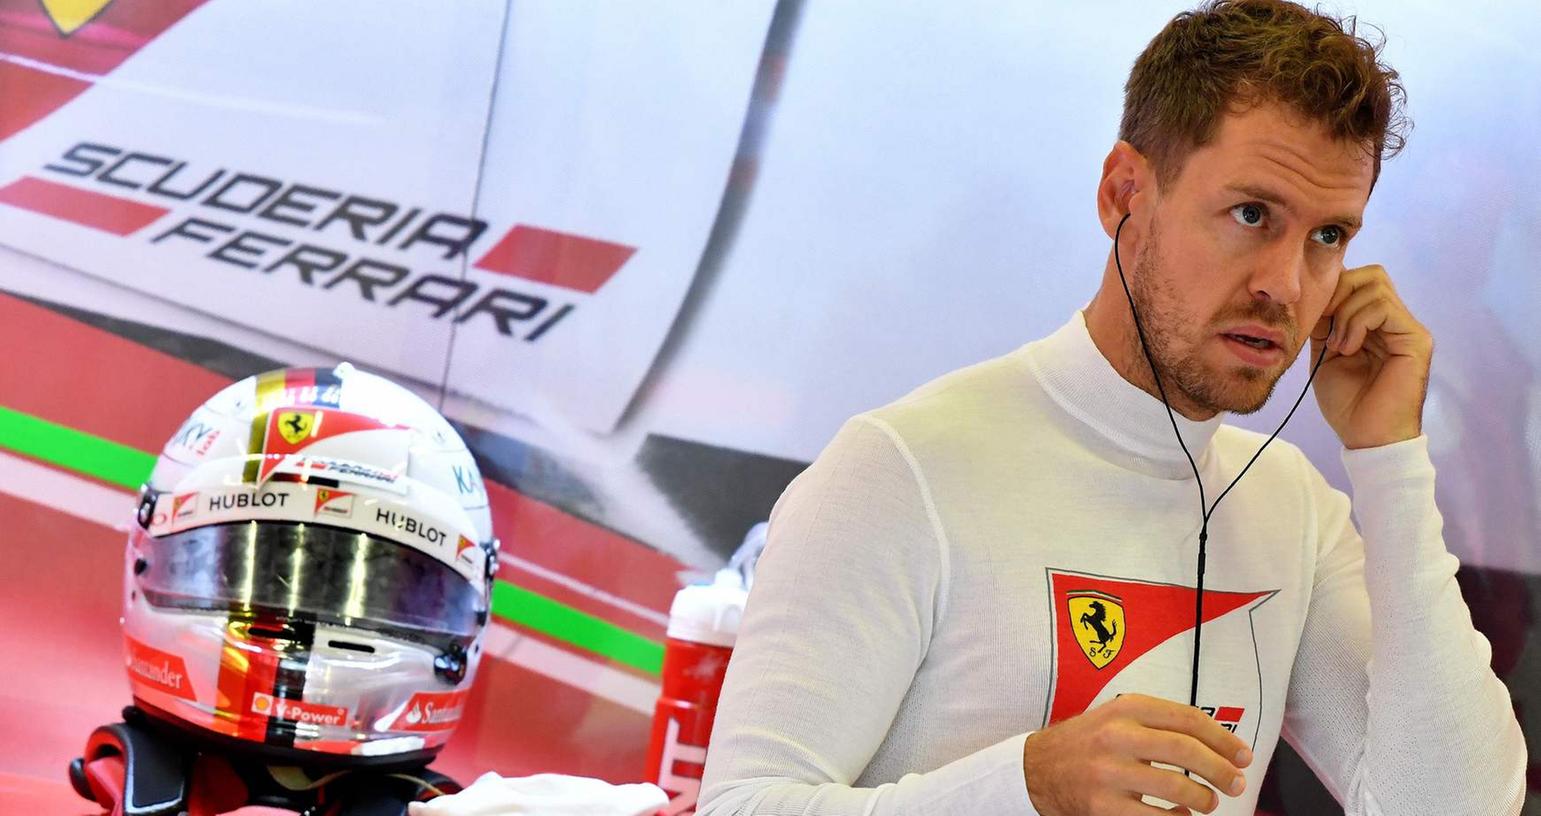 Rund läuft es bei Sebastian Vettel in den letzten Monaten nicht. In Ungarn kochen Emotionen hoch, die an erfolgreichere Zeiten erinnern.